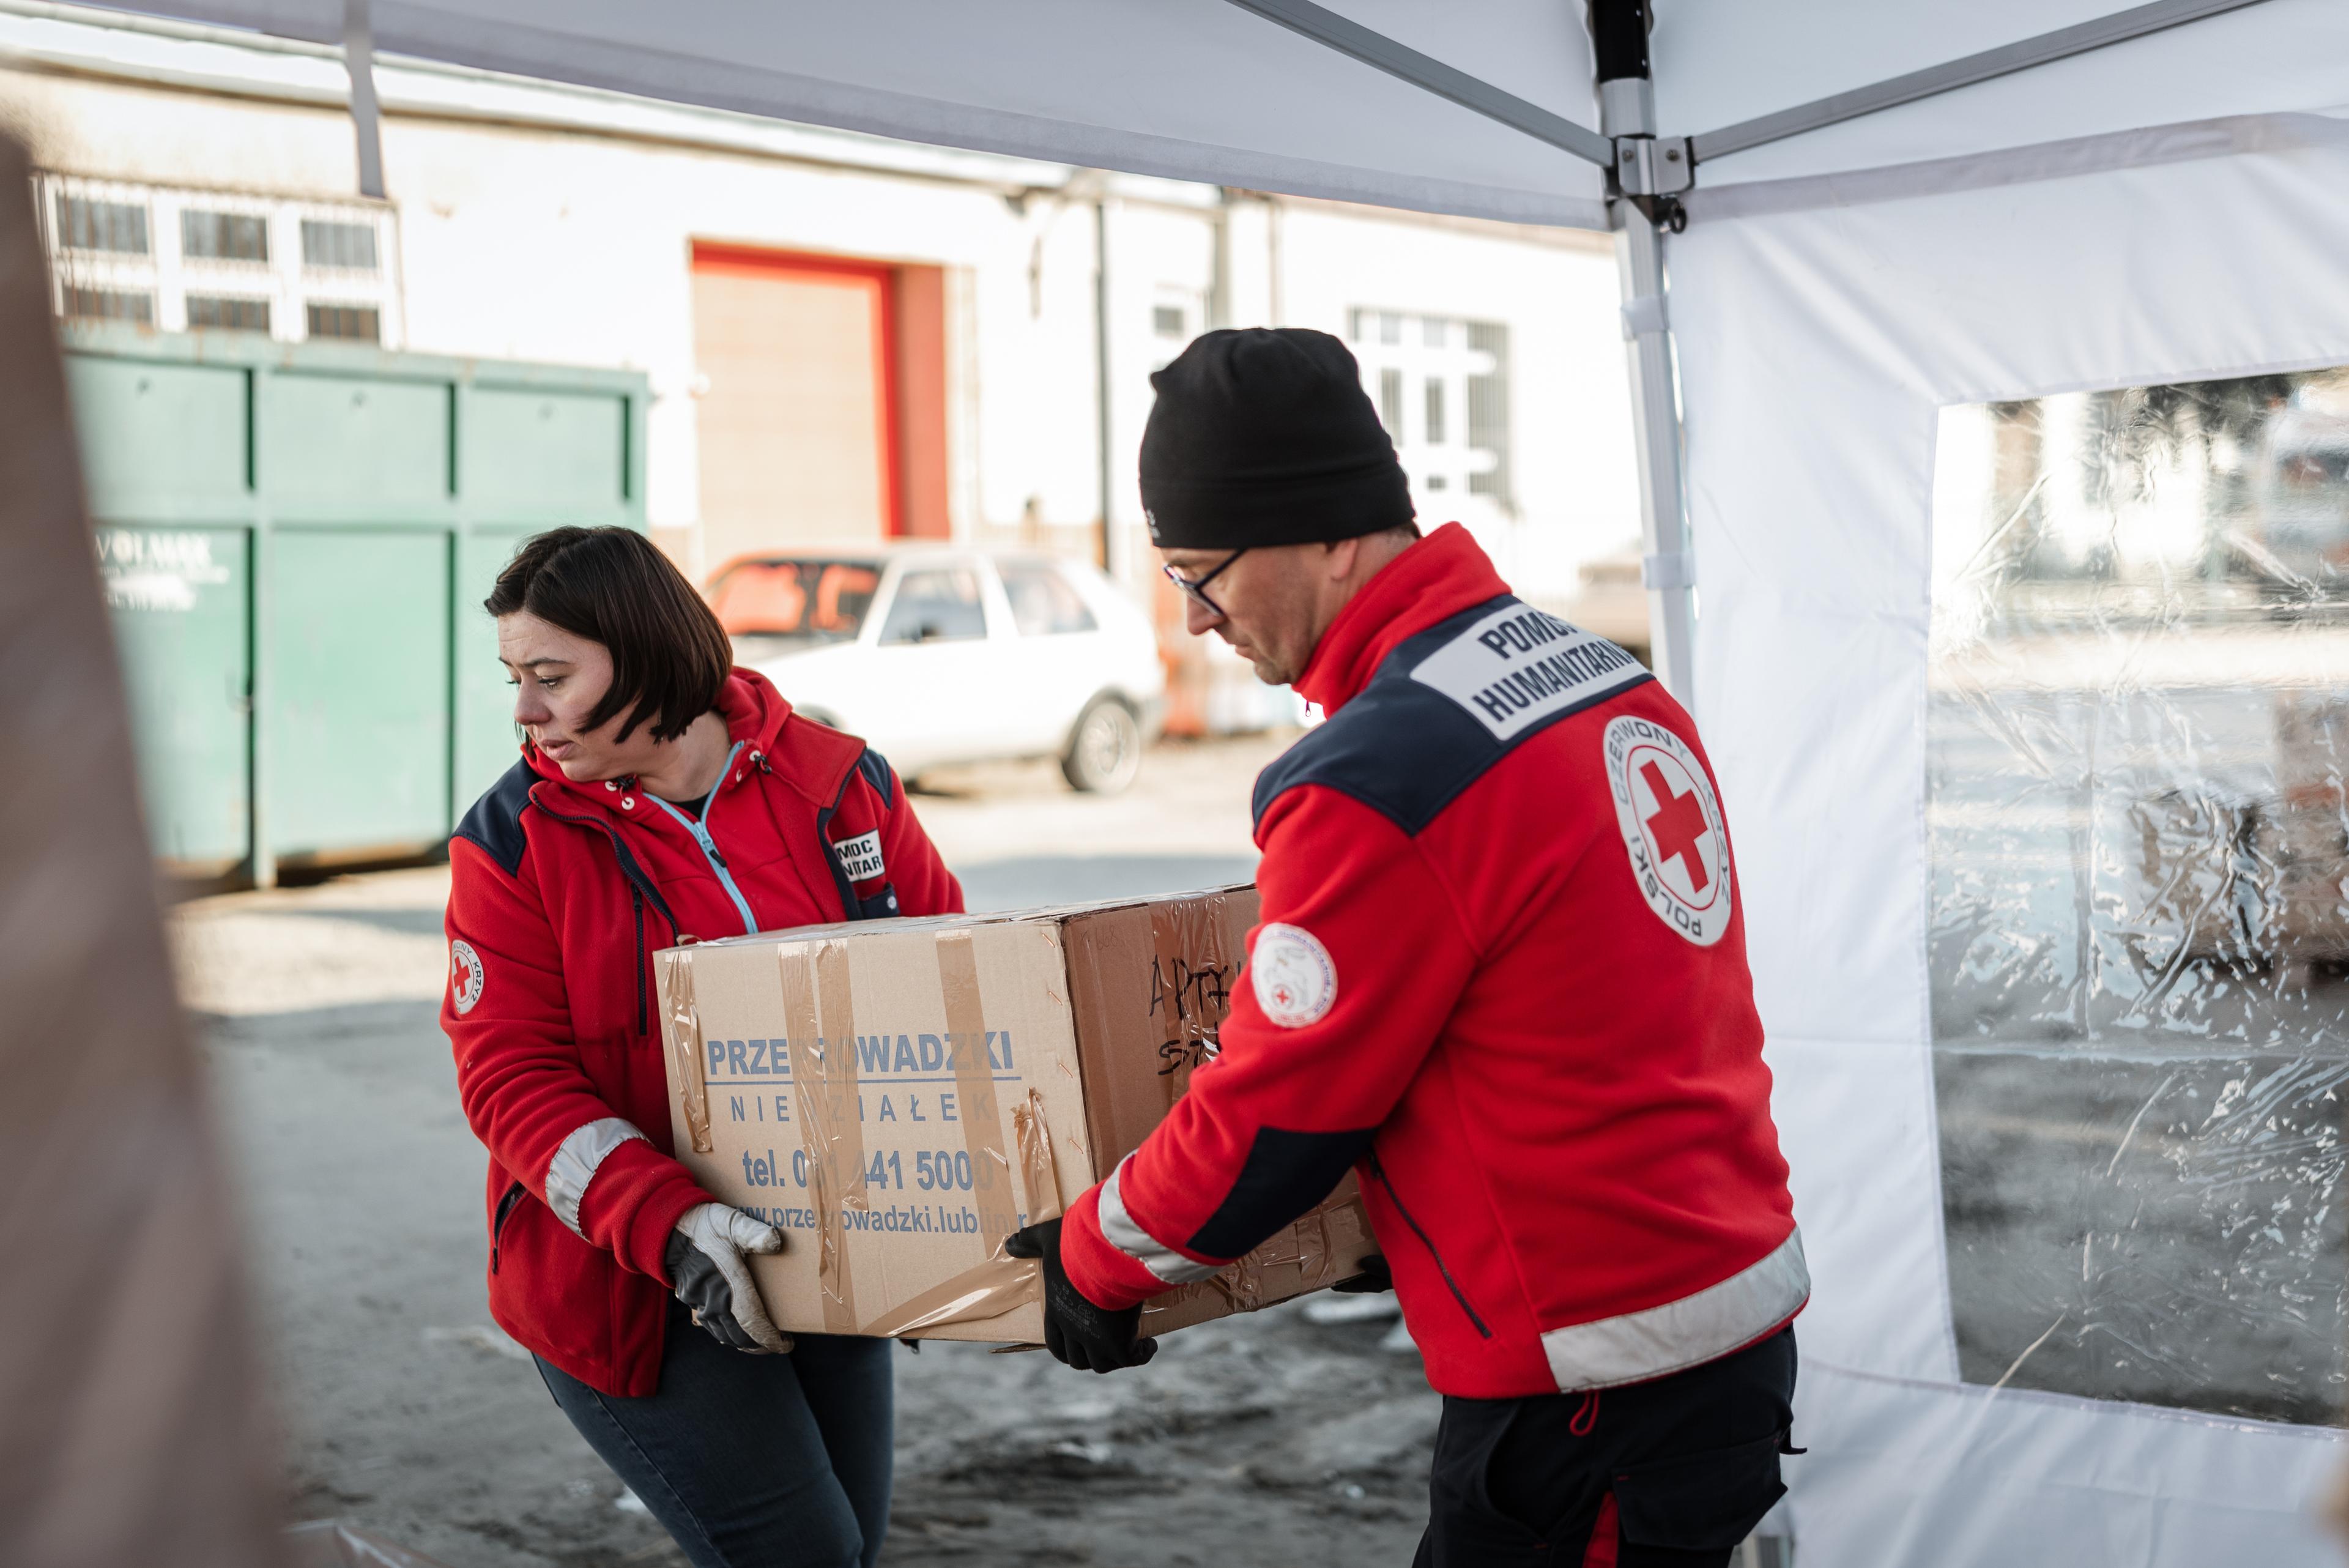 Eine Helferin und ein Helfer vom Polnischen Roten Kreuz tragen gemeinsam eine Kiste aus Karton. Vermutlich handelt es sich um Hilfsgüter.